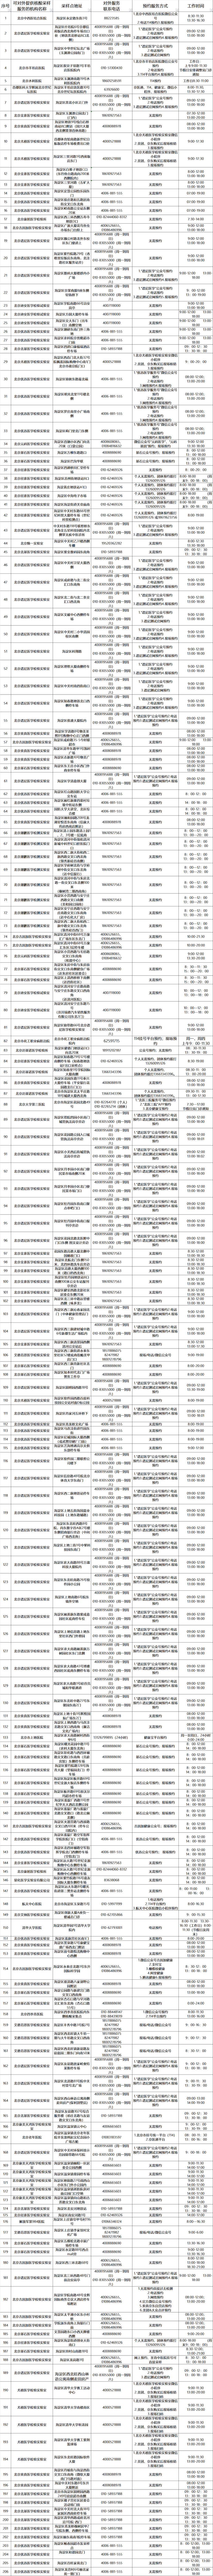 北京海淀区公布第一批206个免费常态化核酸检测采样点